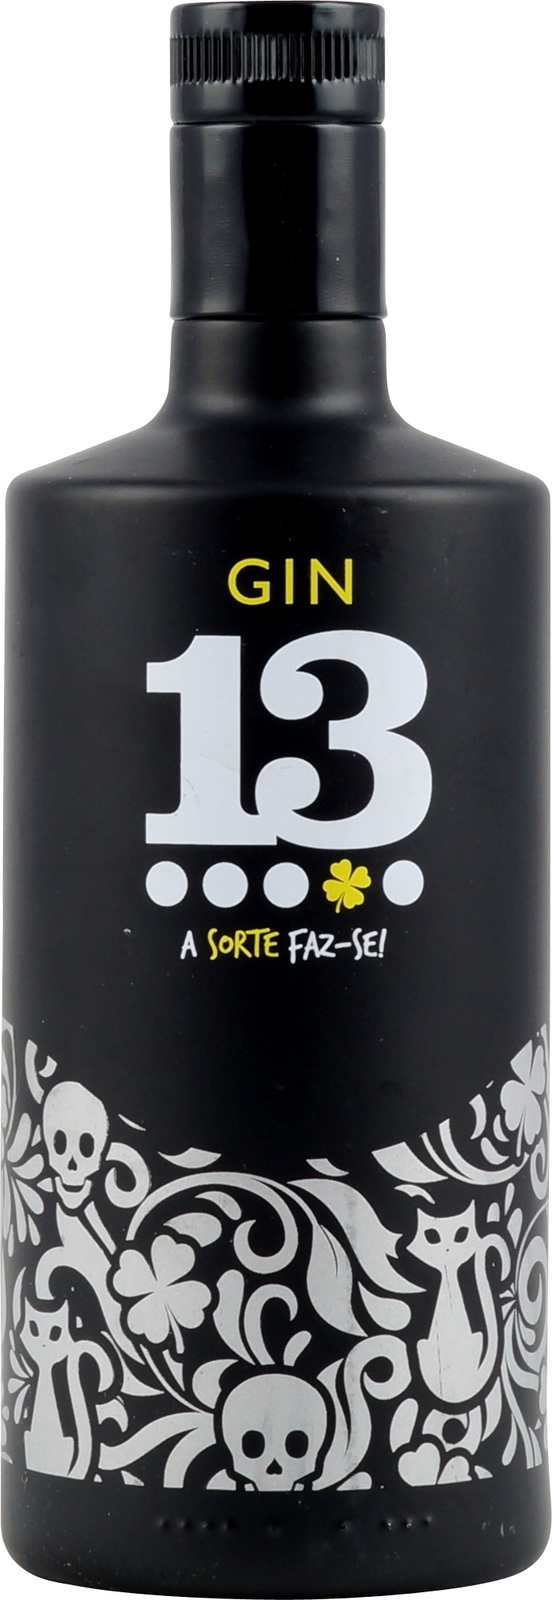 Gin 13 aus Portugal hier verfügbar im Onlineshop